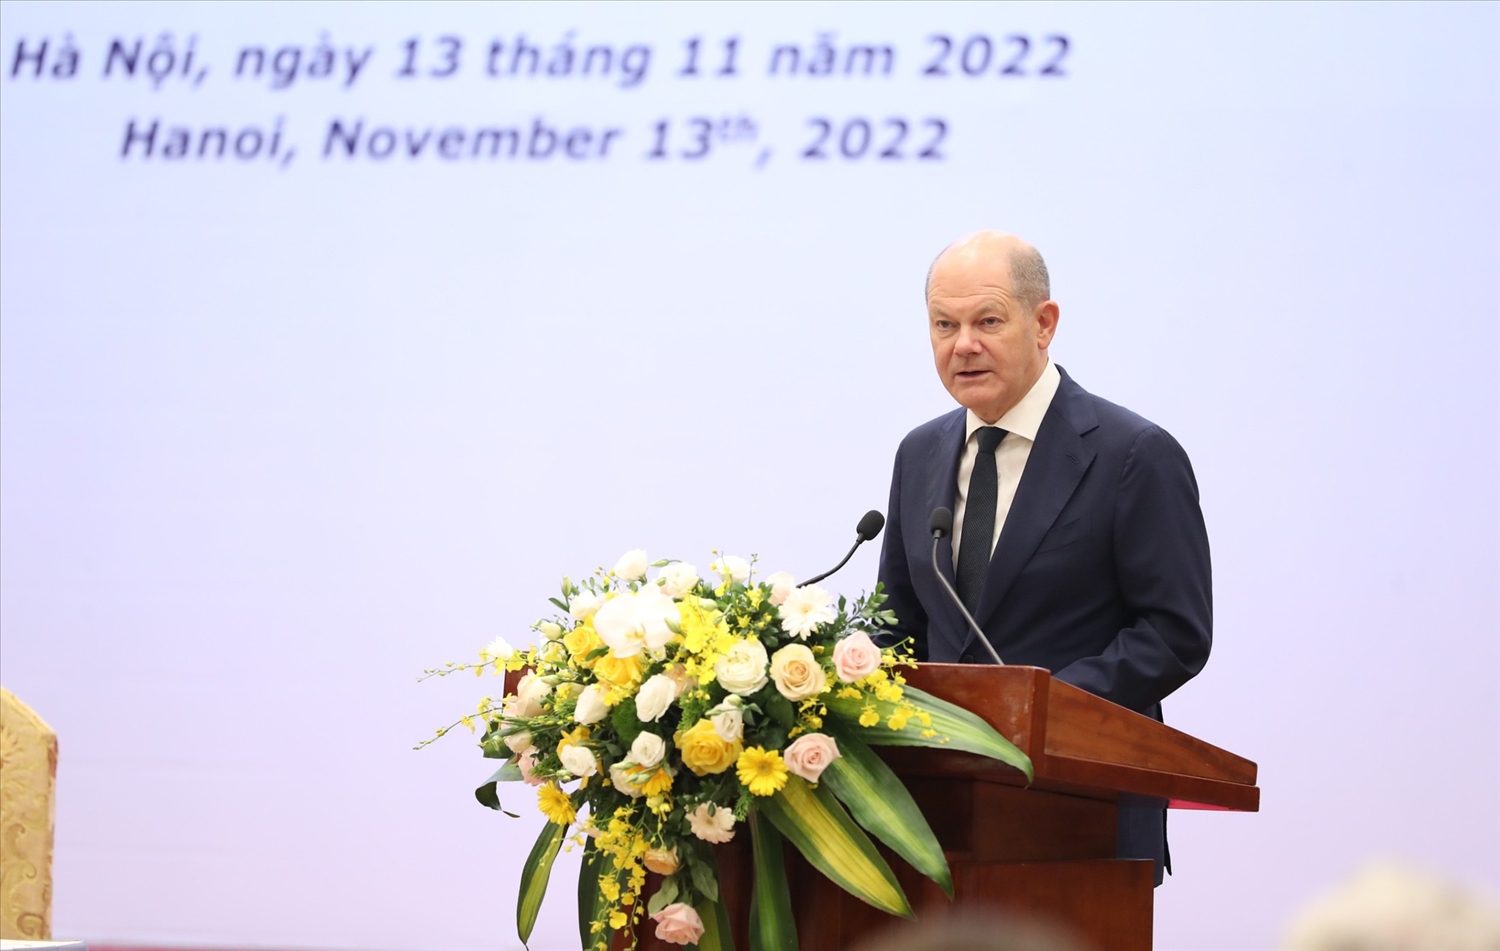 Thủ tướng Đức Olaf Scholz nêu rõ, với nhiều doanh nghiệp Đức và châu Âu, Việt Nam rất quan trọng vì nằm trong mạng lưới kinh tế rất phong phú của châu Á và sức đề kháng của Việt Nam trong thời gian dịch bệnh là rất ấn tượng, với những thế mạnh nổi bật về nguồn nguyên liệu và lao động - Ảnh: VGP/Nhật Bắc